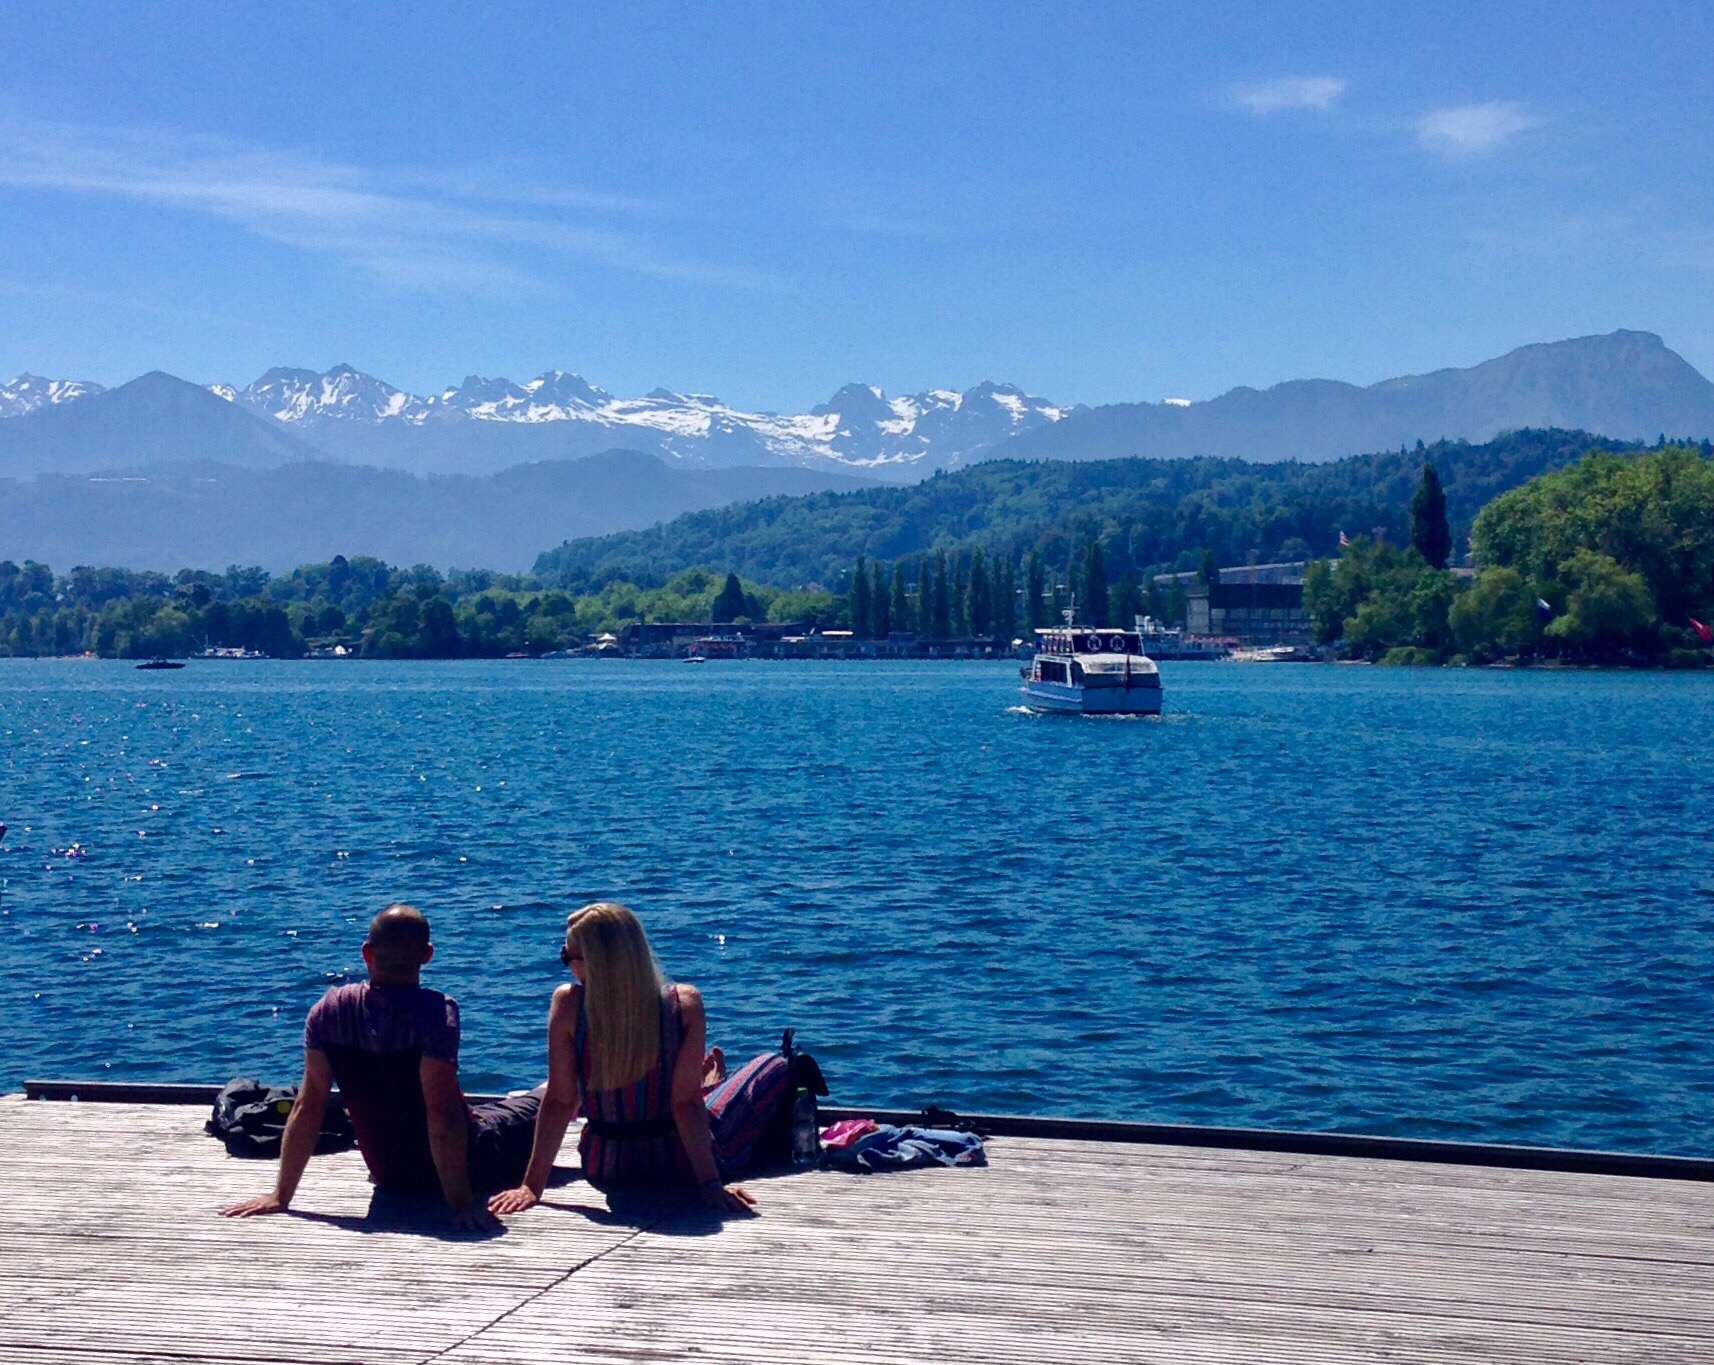 【琉森湖畔】 在琉森湖畔小坐，望着无垠的湖水放开思绪暇想…… 远处的阿尔卑斯山脉连绵不断，间杂着白雪